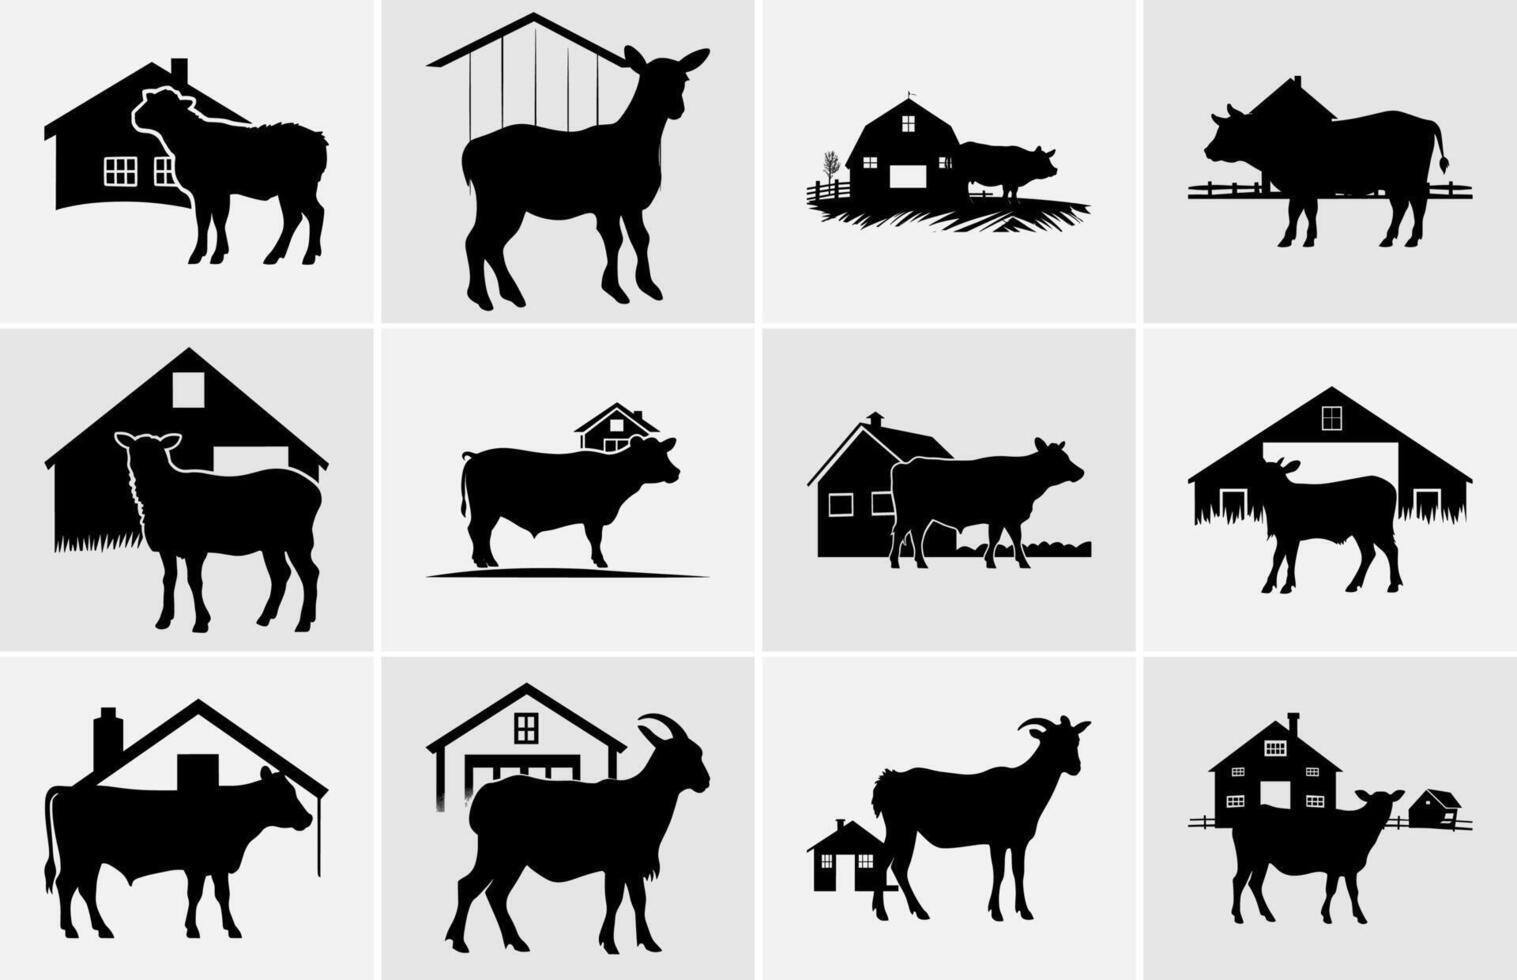 azienda agricola animali nel silhouette, terreni agricoli silhouette paesaggio vettore illustrazione.